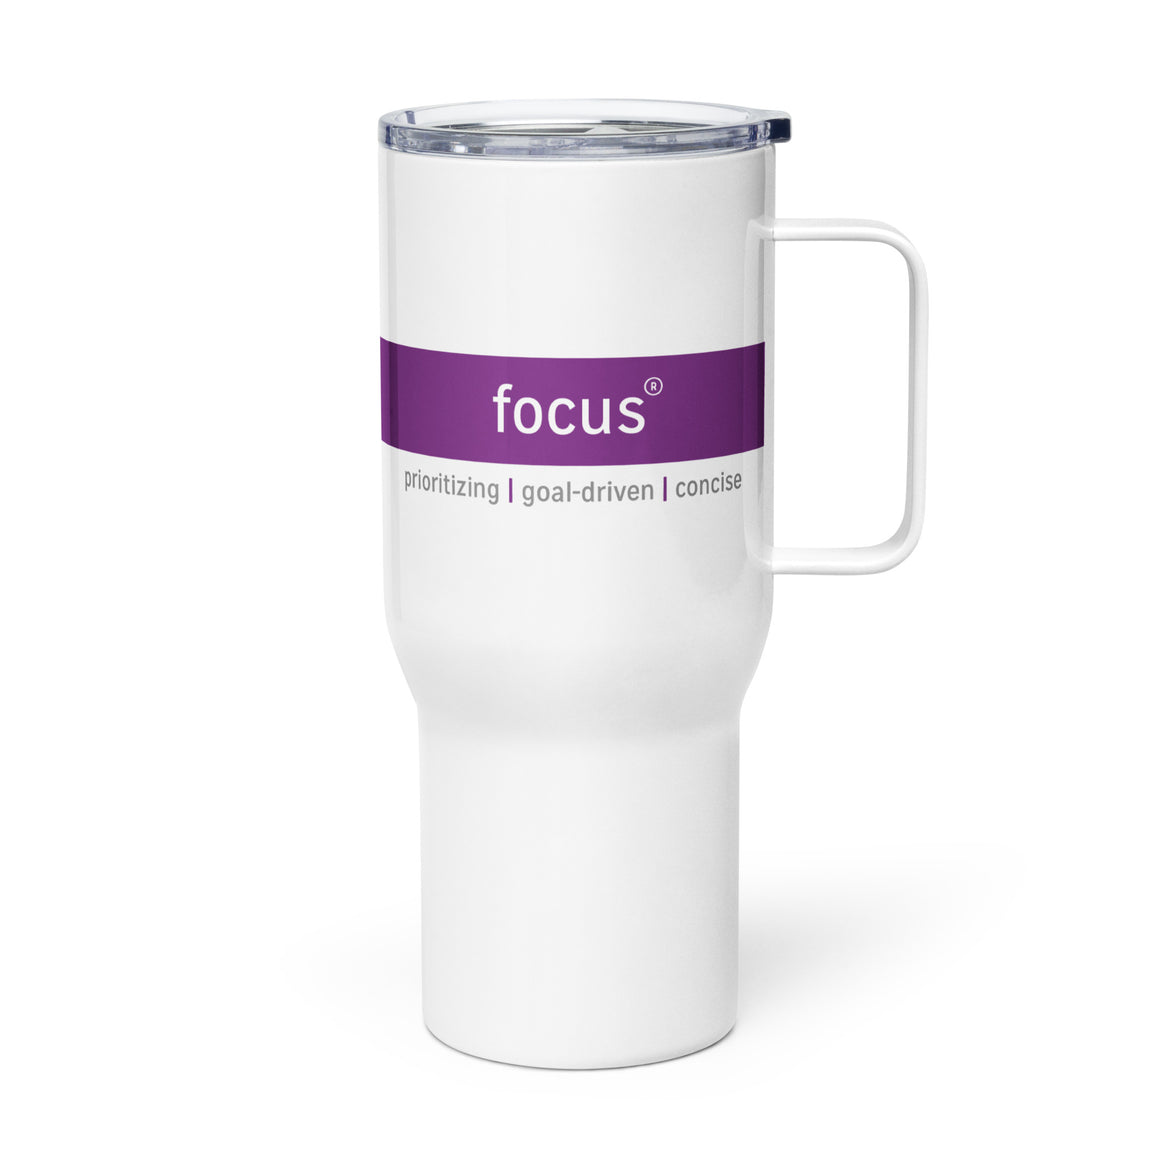 CliftonStrengths Travel Mug - Focus